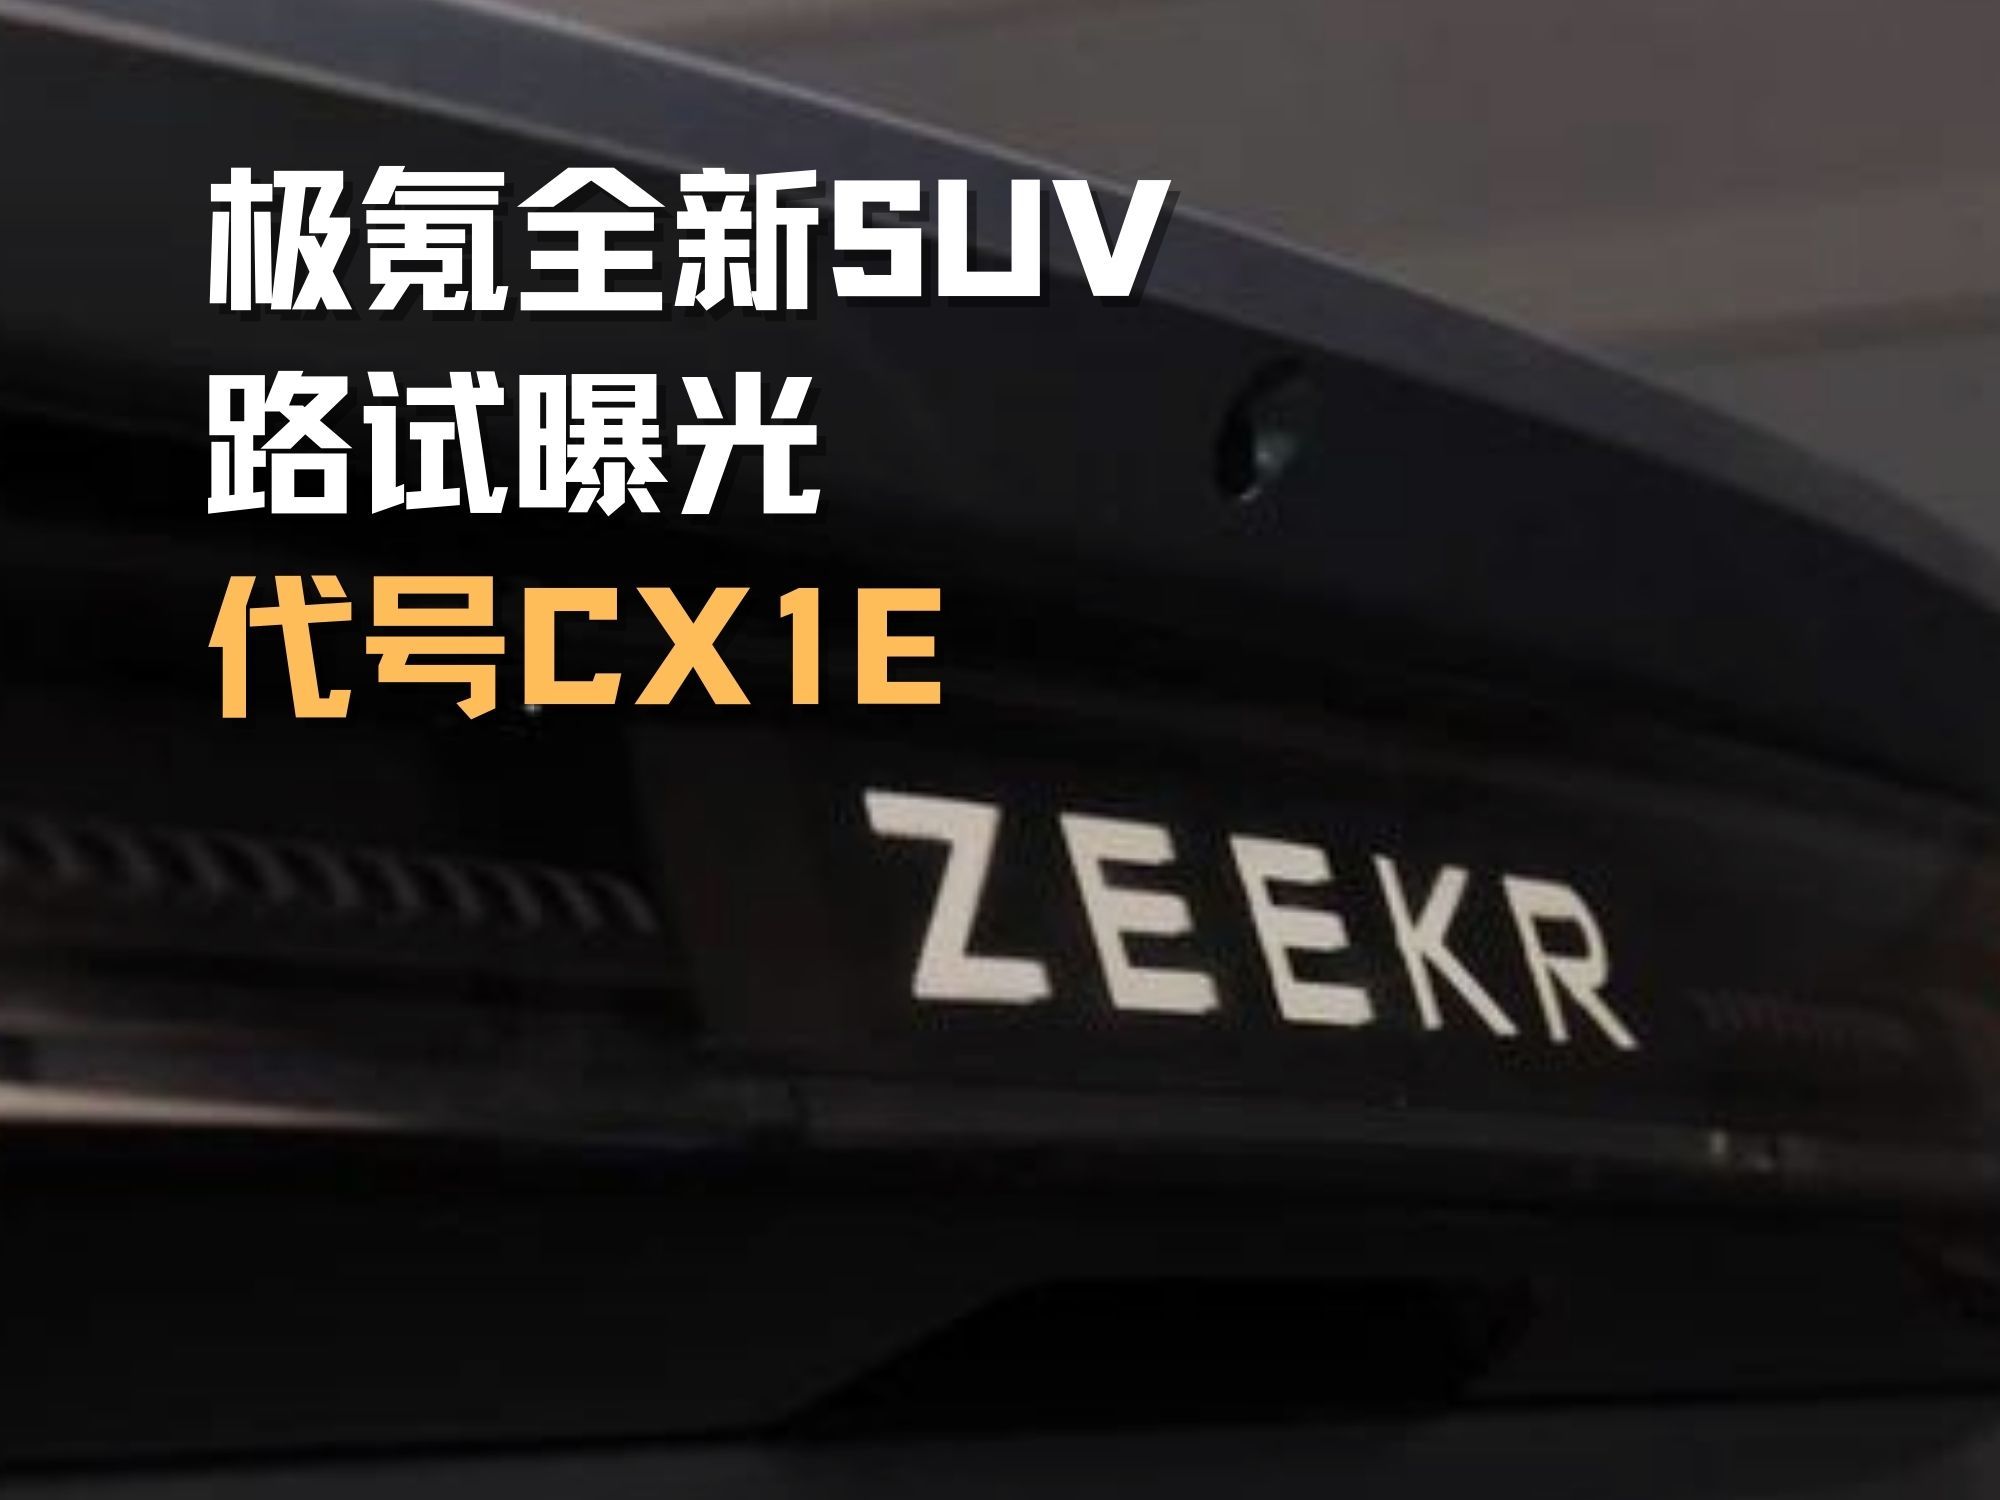 极氪全新SUV路试曝光 代号CX1E